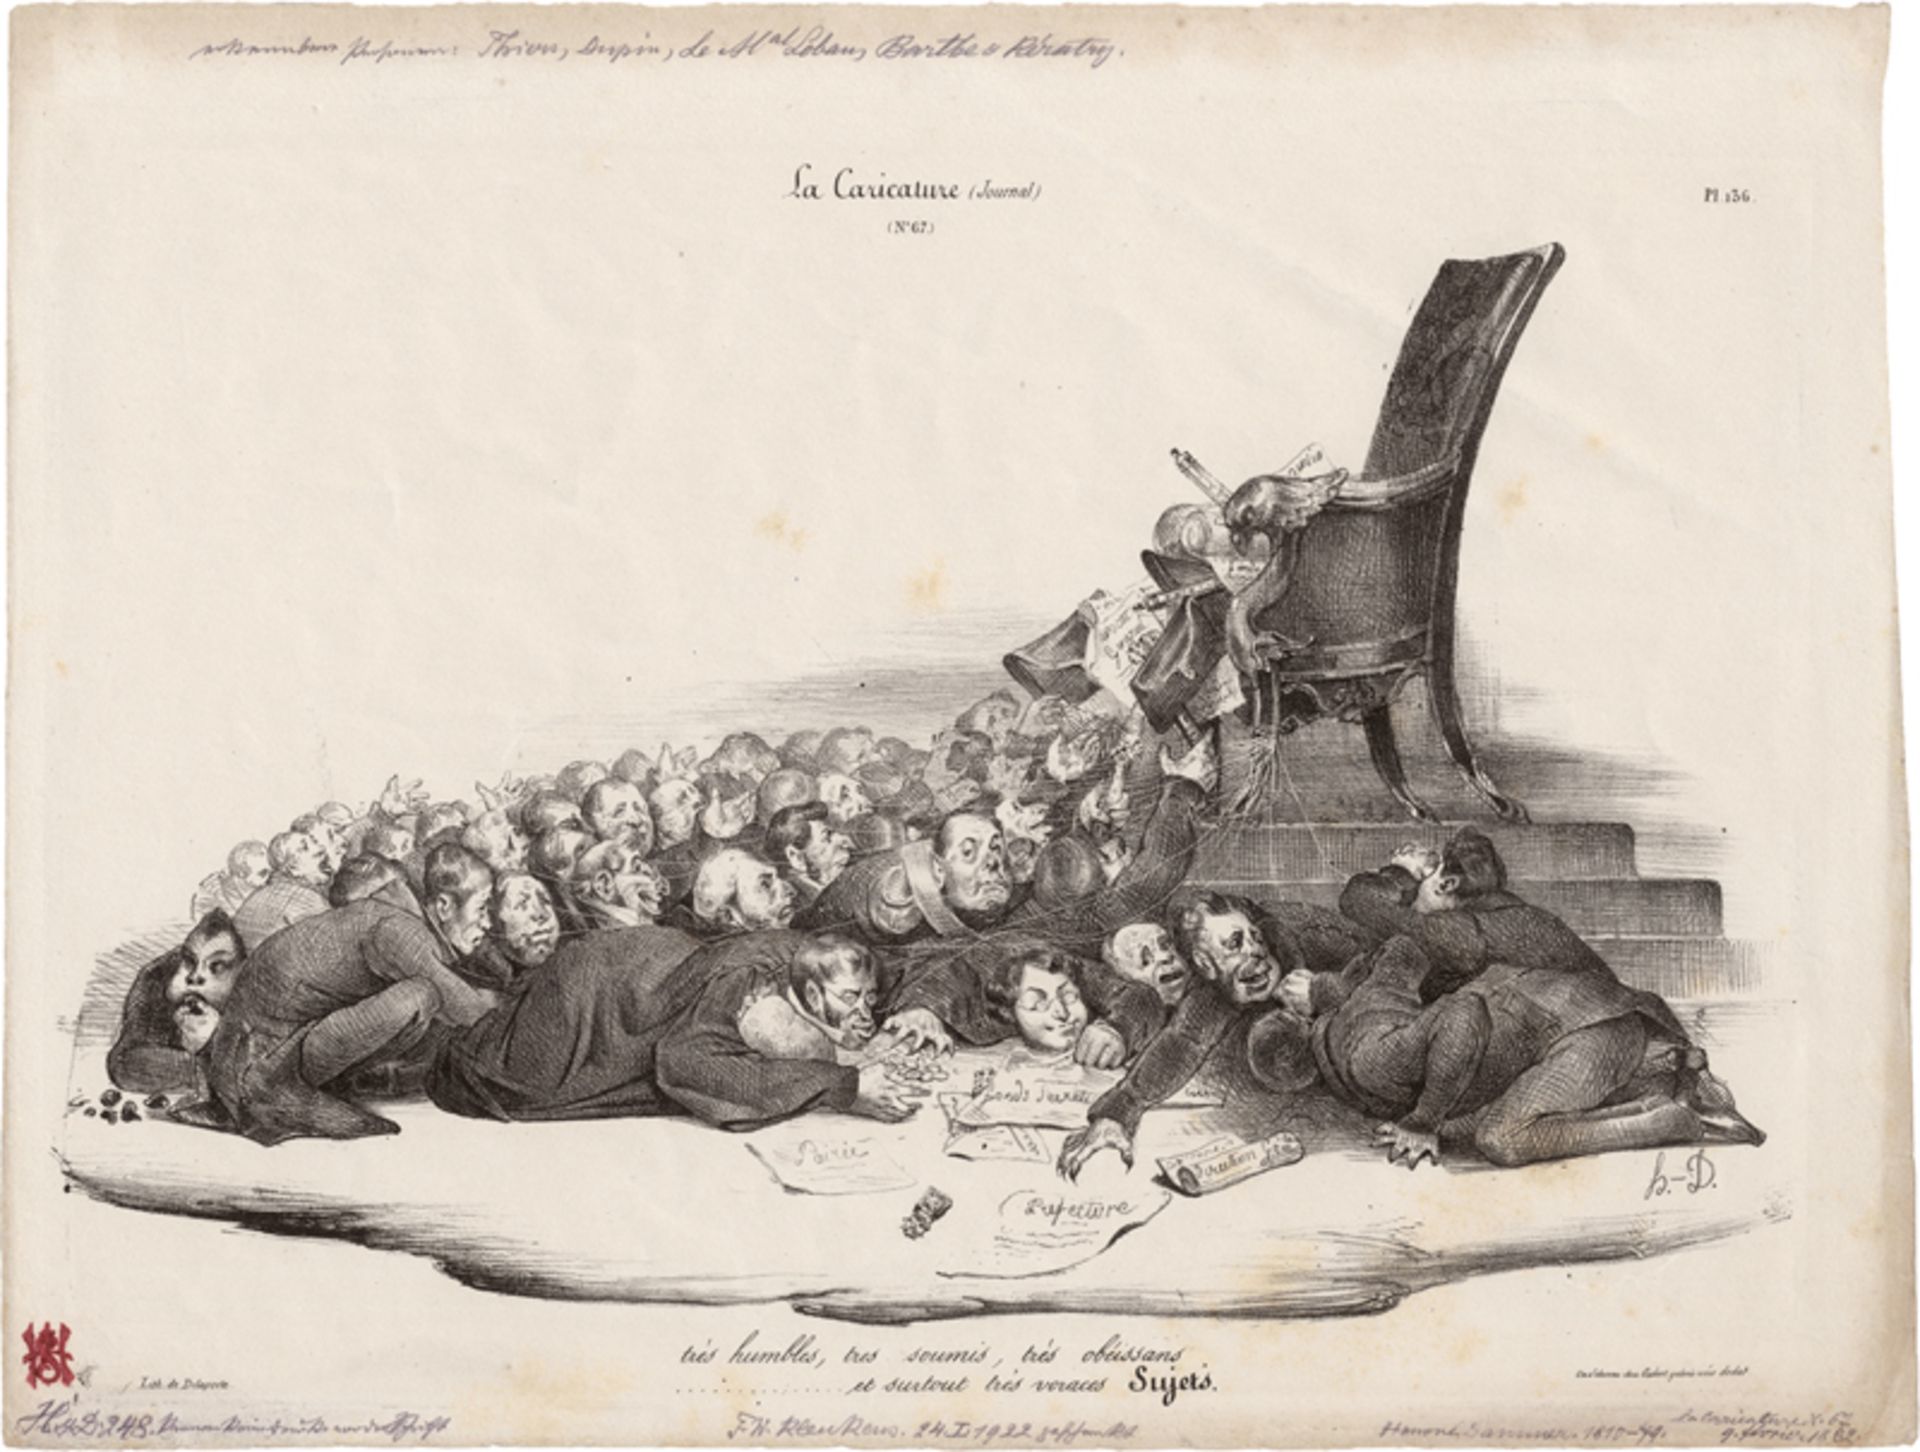 Daumier, Honoré: La caricature (Journal)